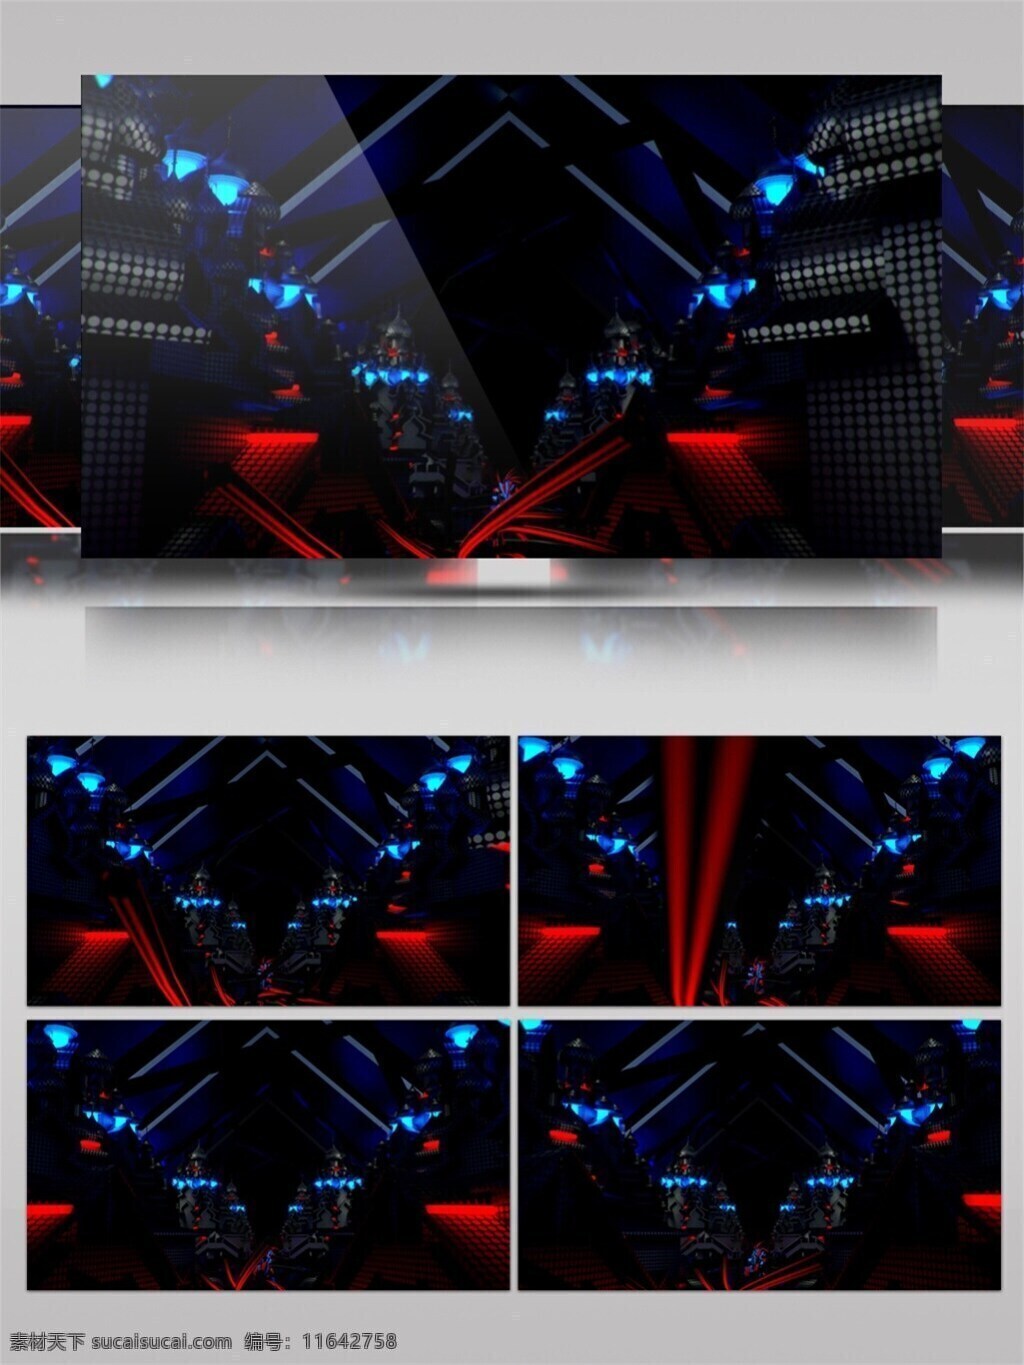 红蓝 动感 光束 视频 灯光 红色 蓝色 舞台灯光 晚会舞台背景 酒吧舞台 3d视频素材 特效视频素材